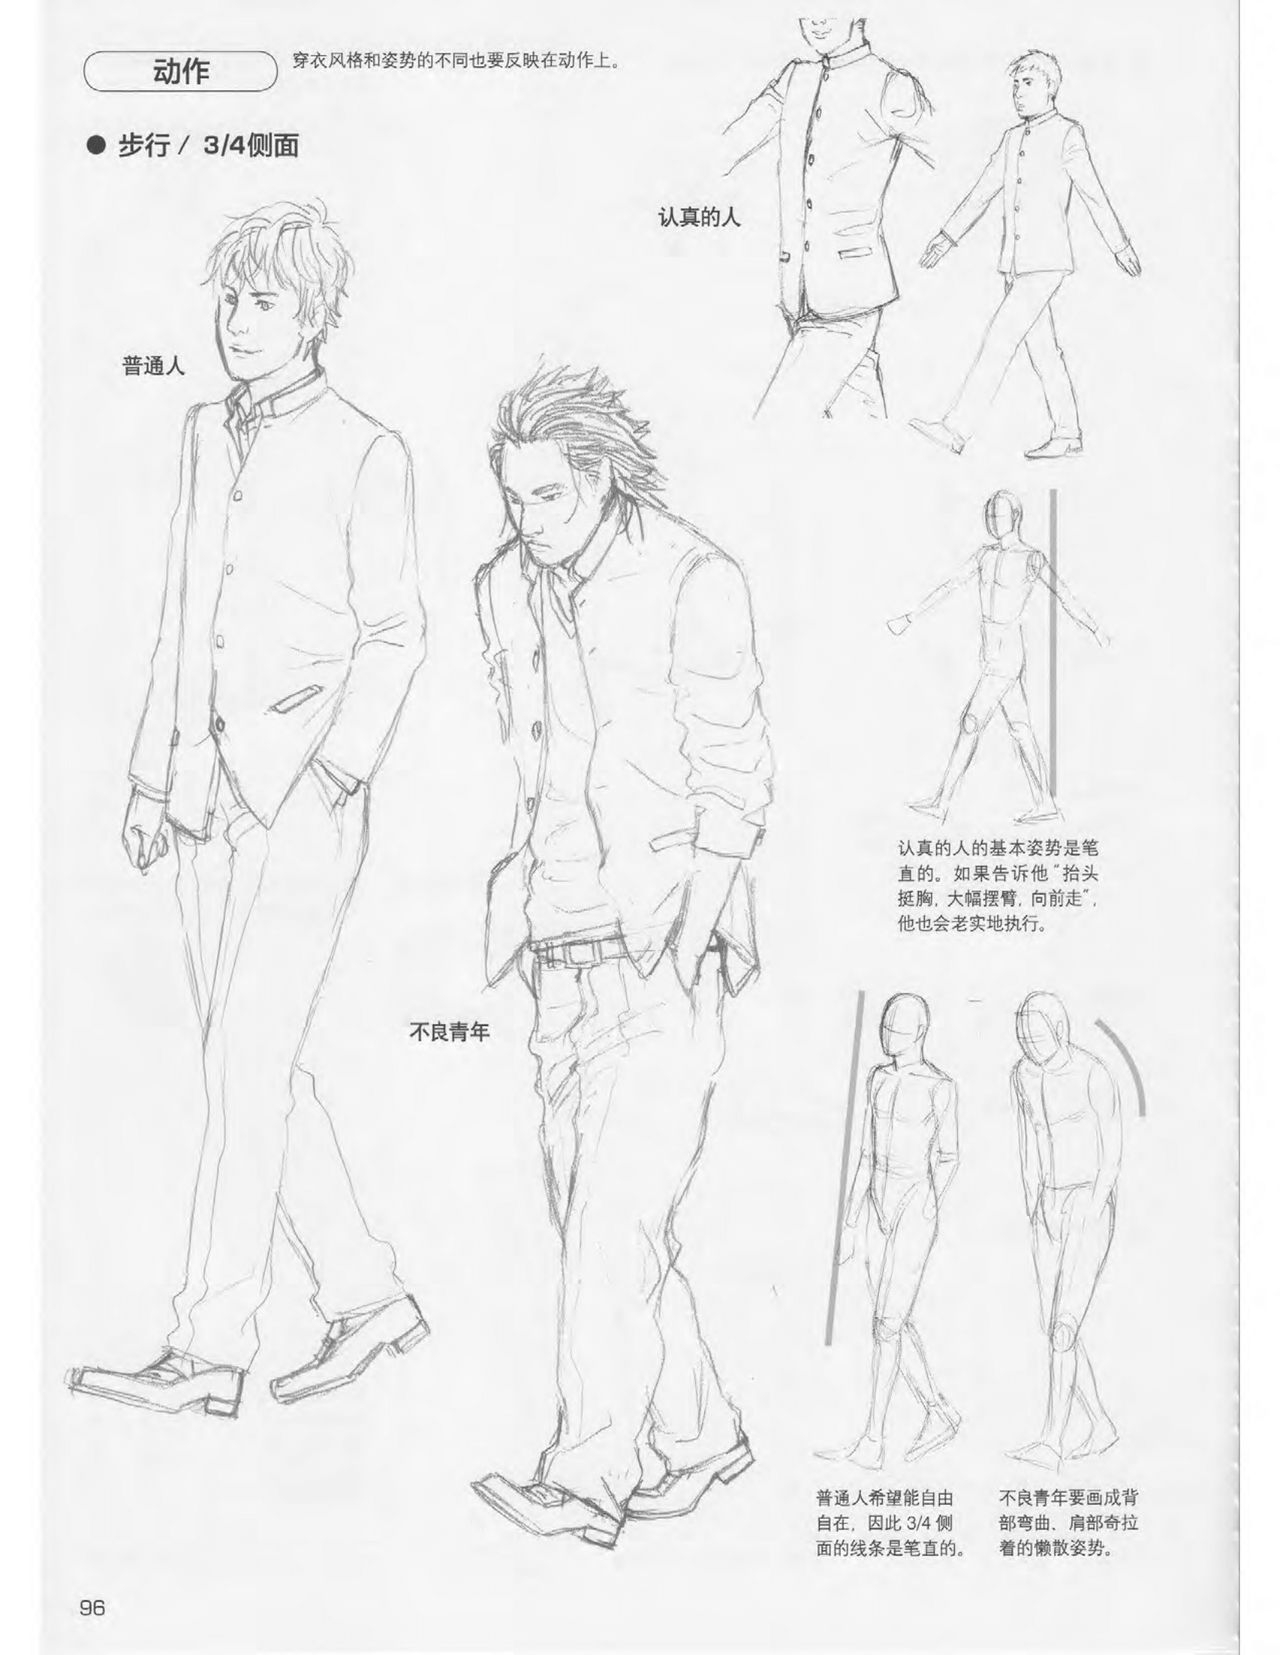 Japanese Manga Master Lecture 3: Lin Akira and Kakumaru Maru Talk About Glamorous Character Modeling 96